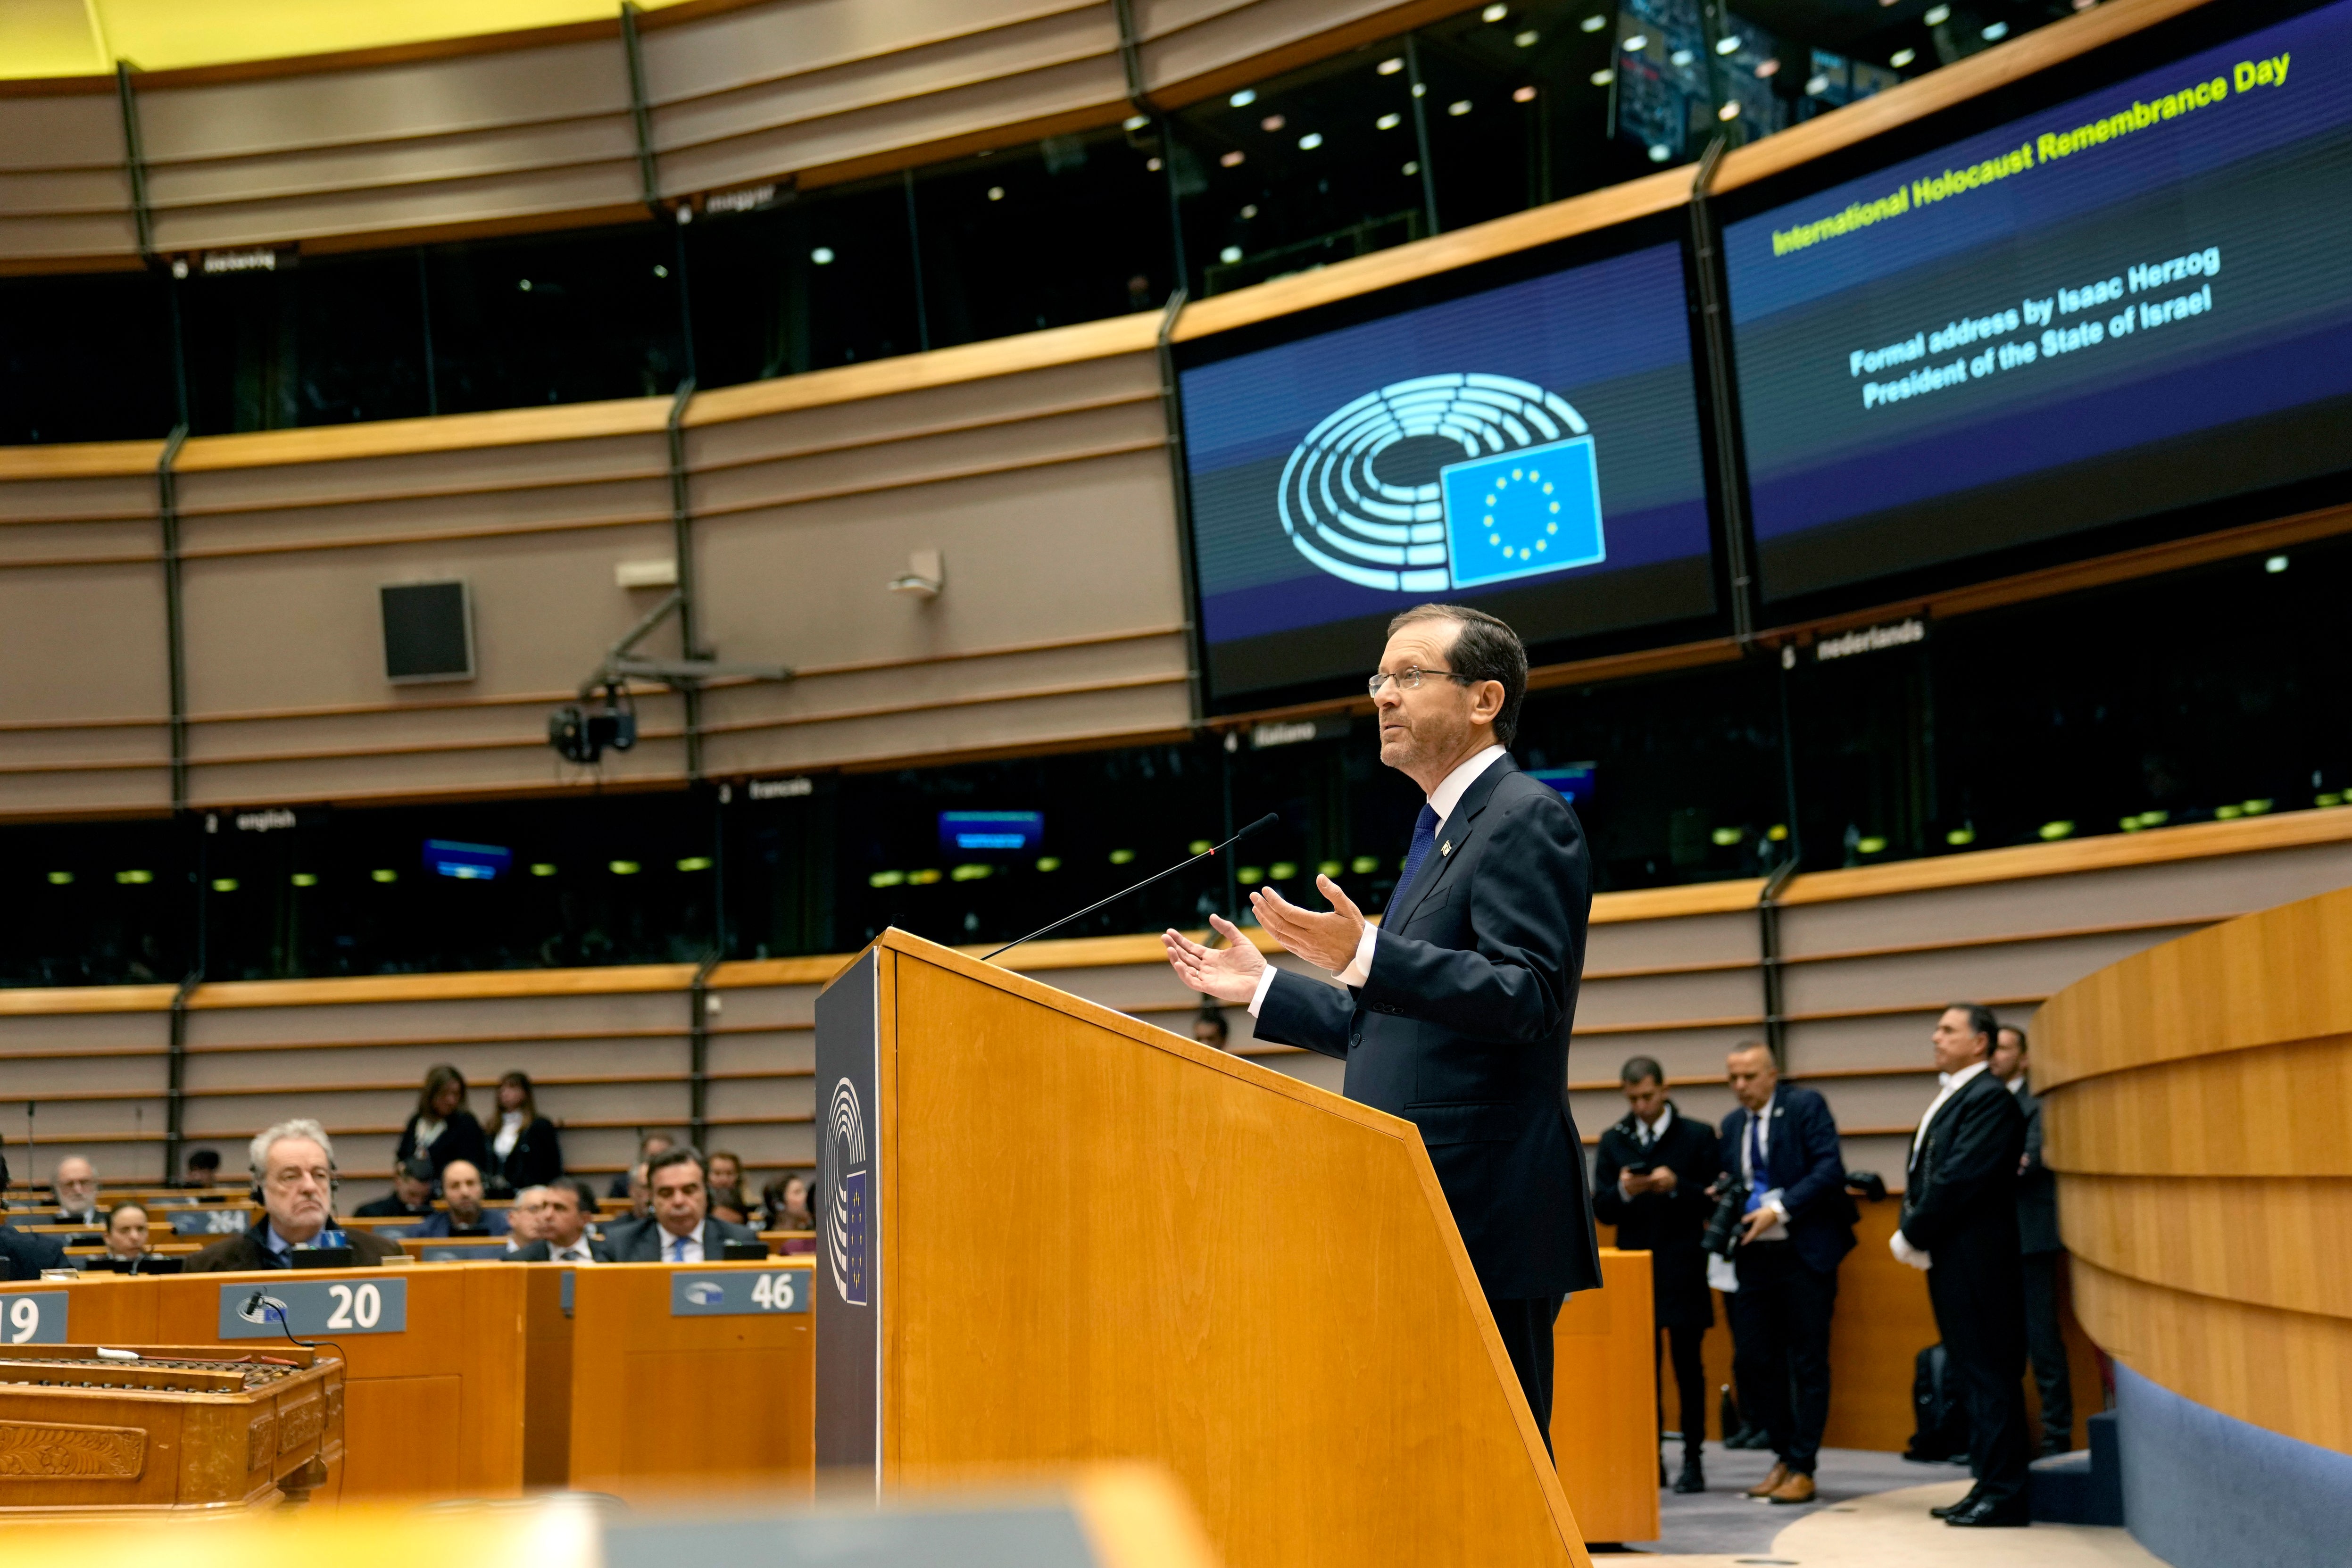 EU-Parlament - Israelischer Präsident Herzog besorgt über zunehmenden Antisemitismus